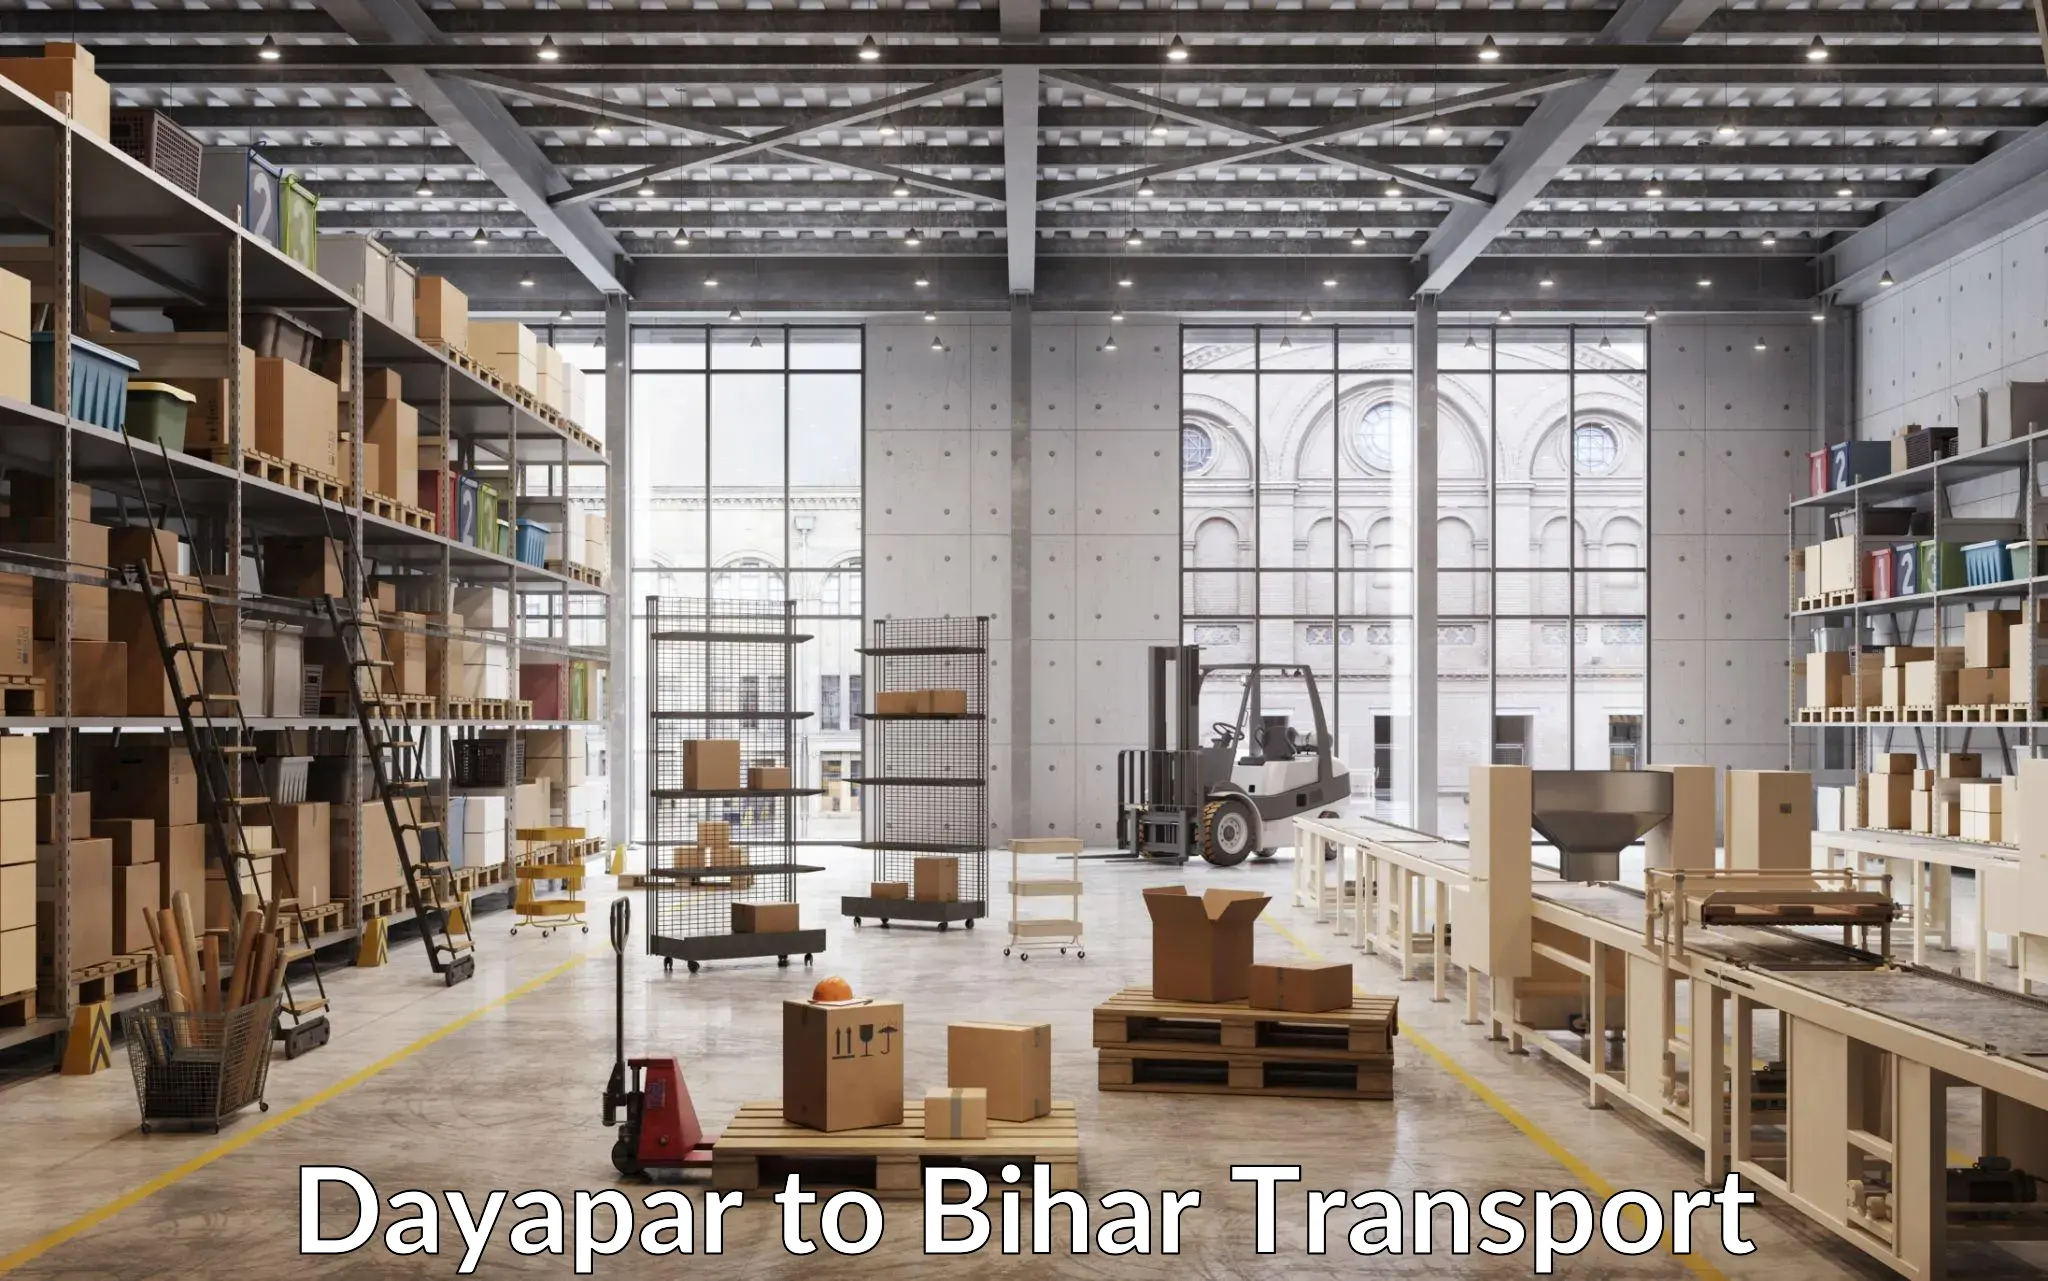 Road transport online services Dayapar to Bhojpur